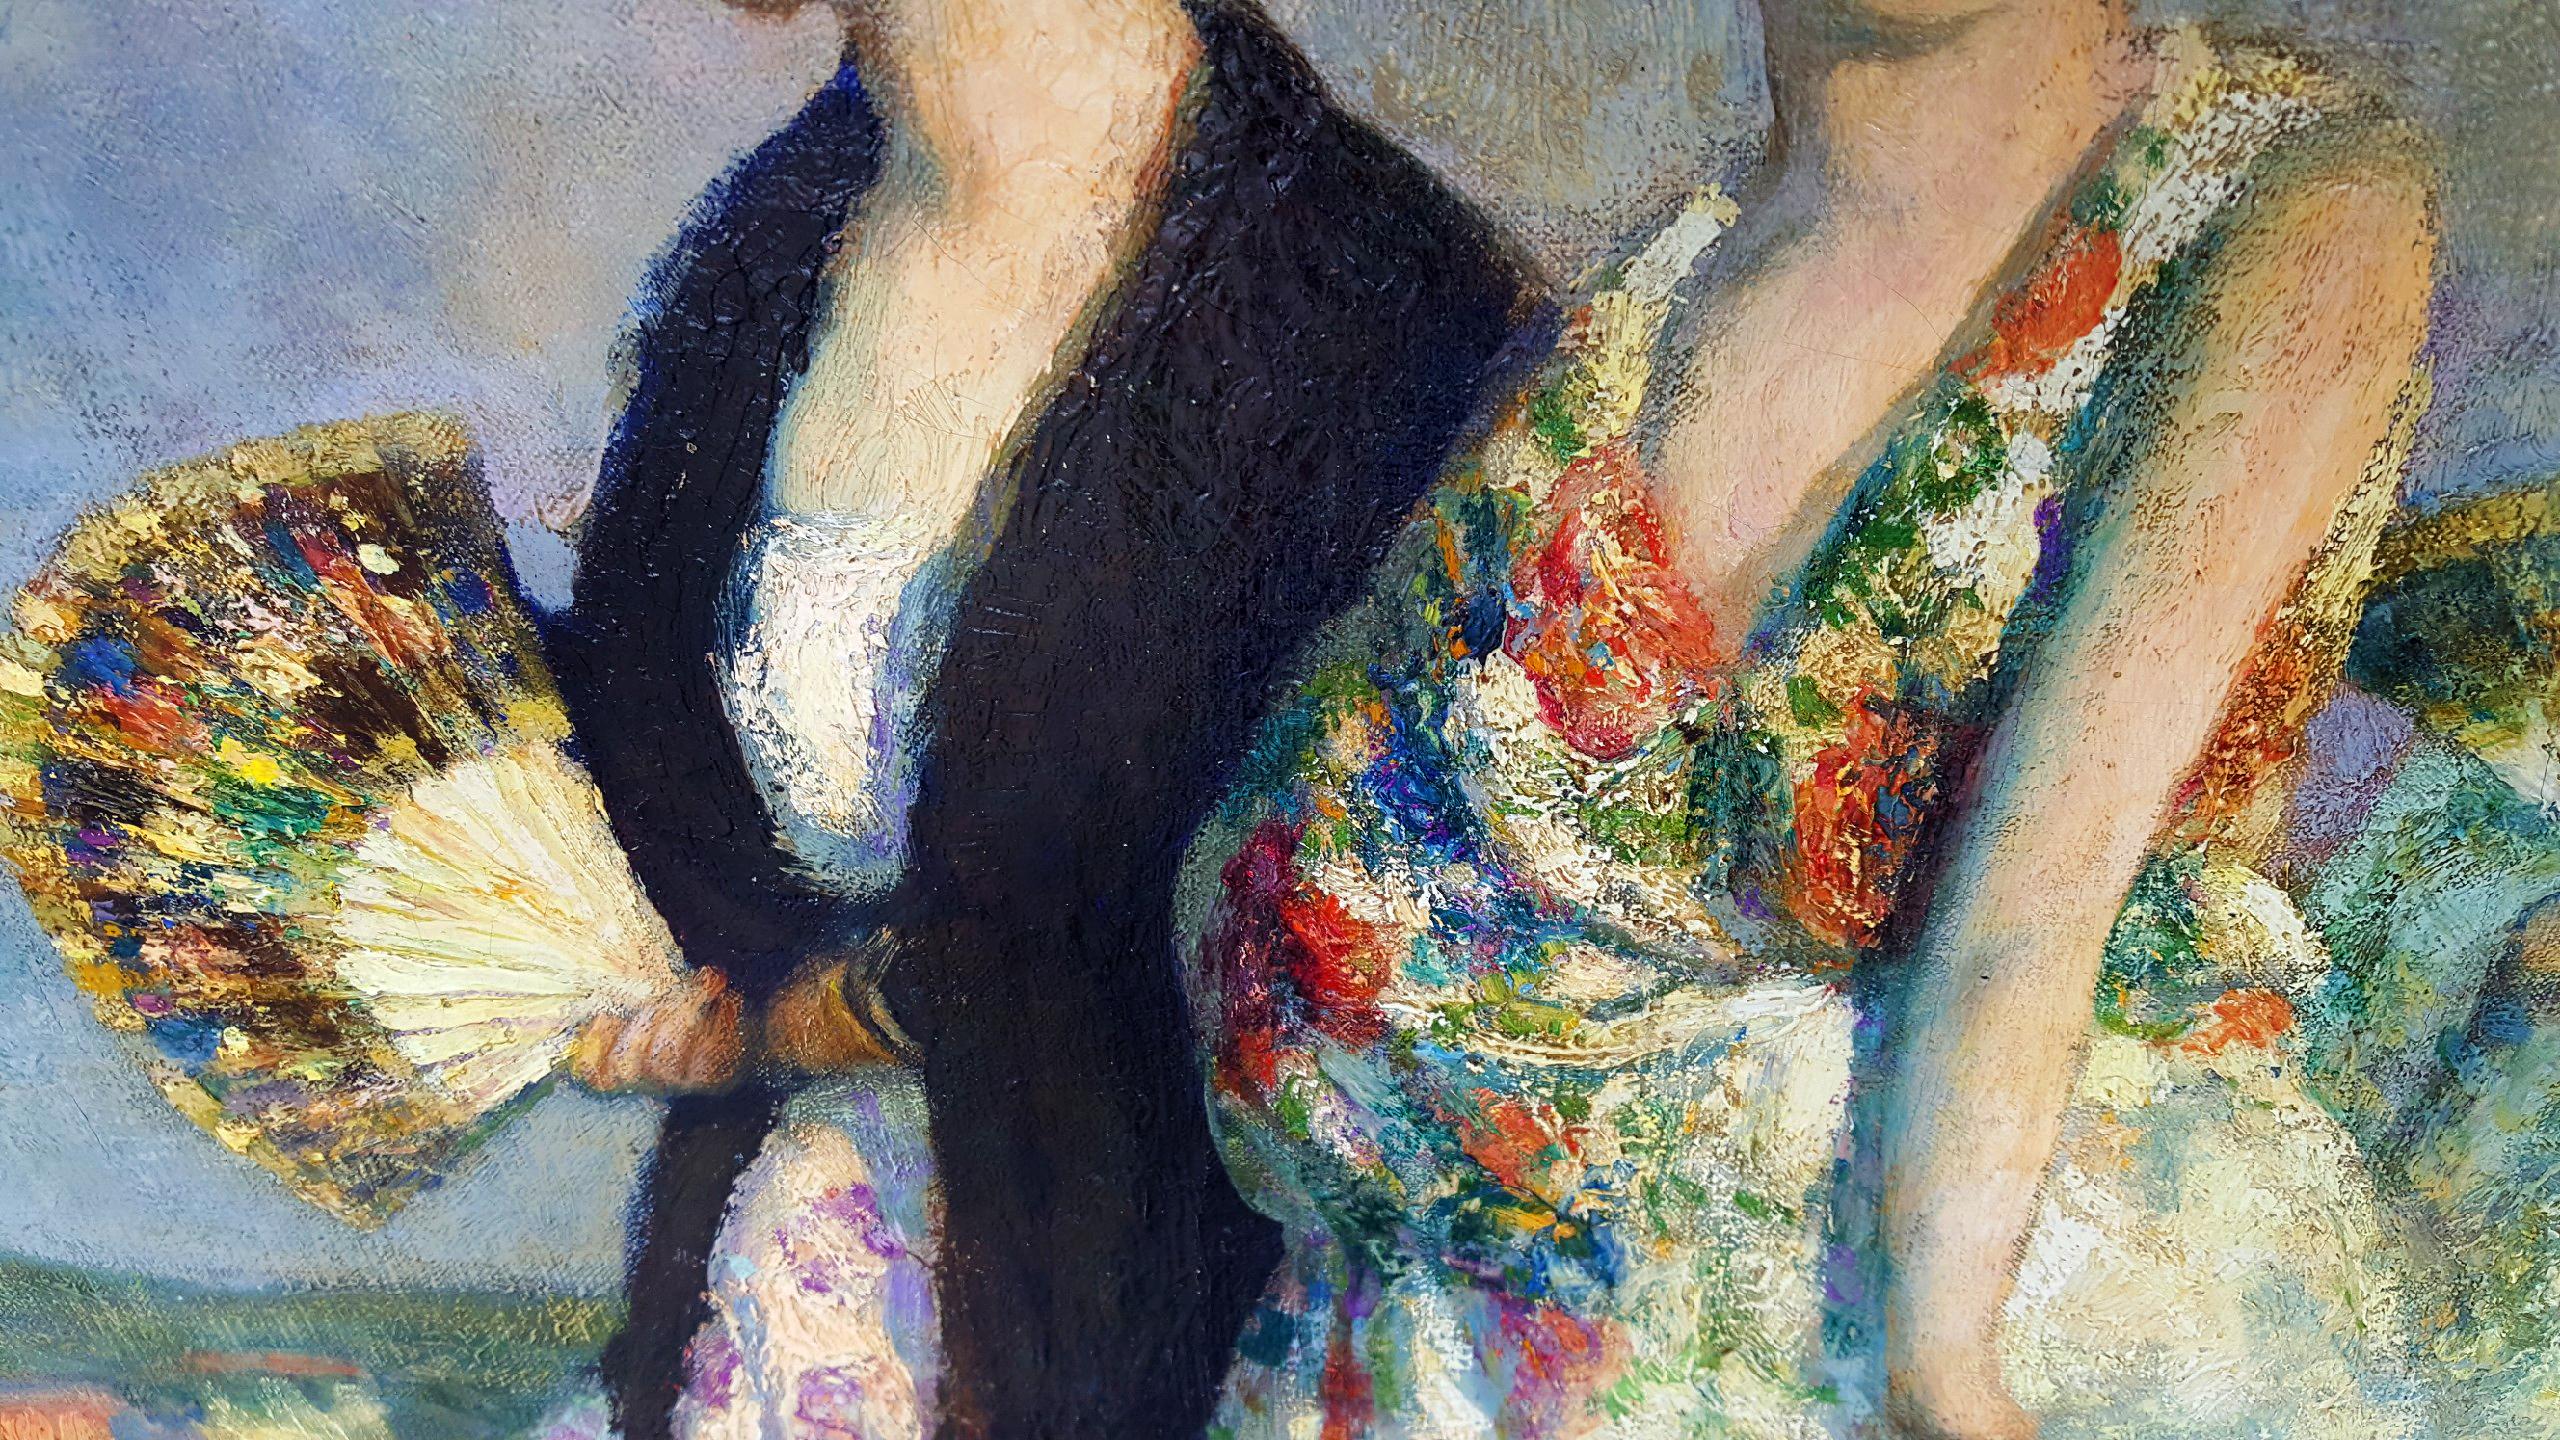 Spanisches Souvenir - mantilla, peineta, von Francis Luis Mora ist ein Gemälde von schönen spanischen Frauen in traditioneller Kleidung mit ihrem Gefolge. Es handelt sich um ein Werk von Museumsqualität. In der Tat,  es hing früher im Palast der